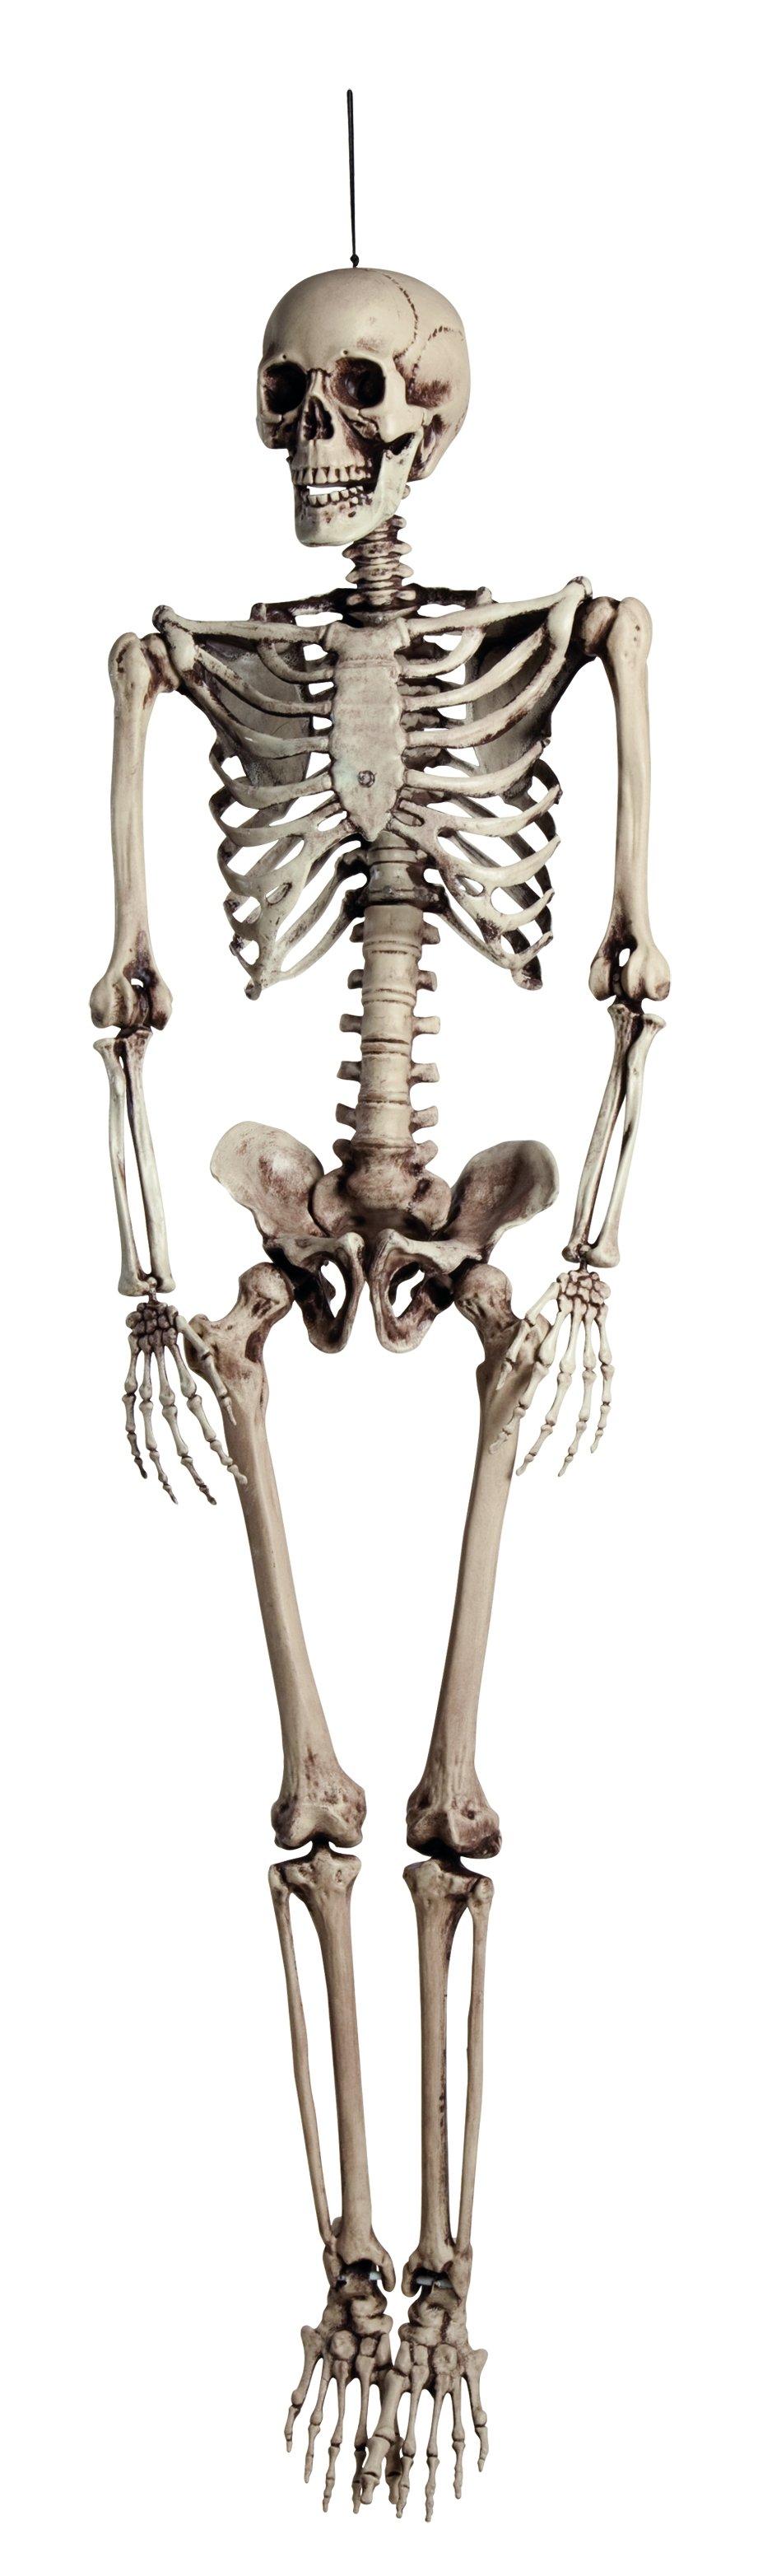 BOLAND HW DEKO SKELETT 160CM Squelette Marcel 160 cm 